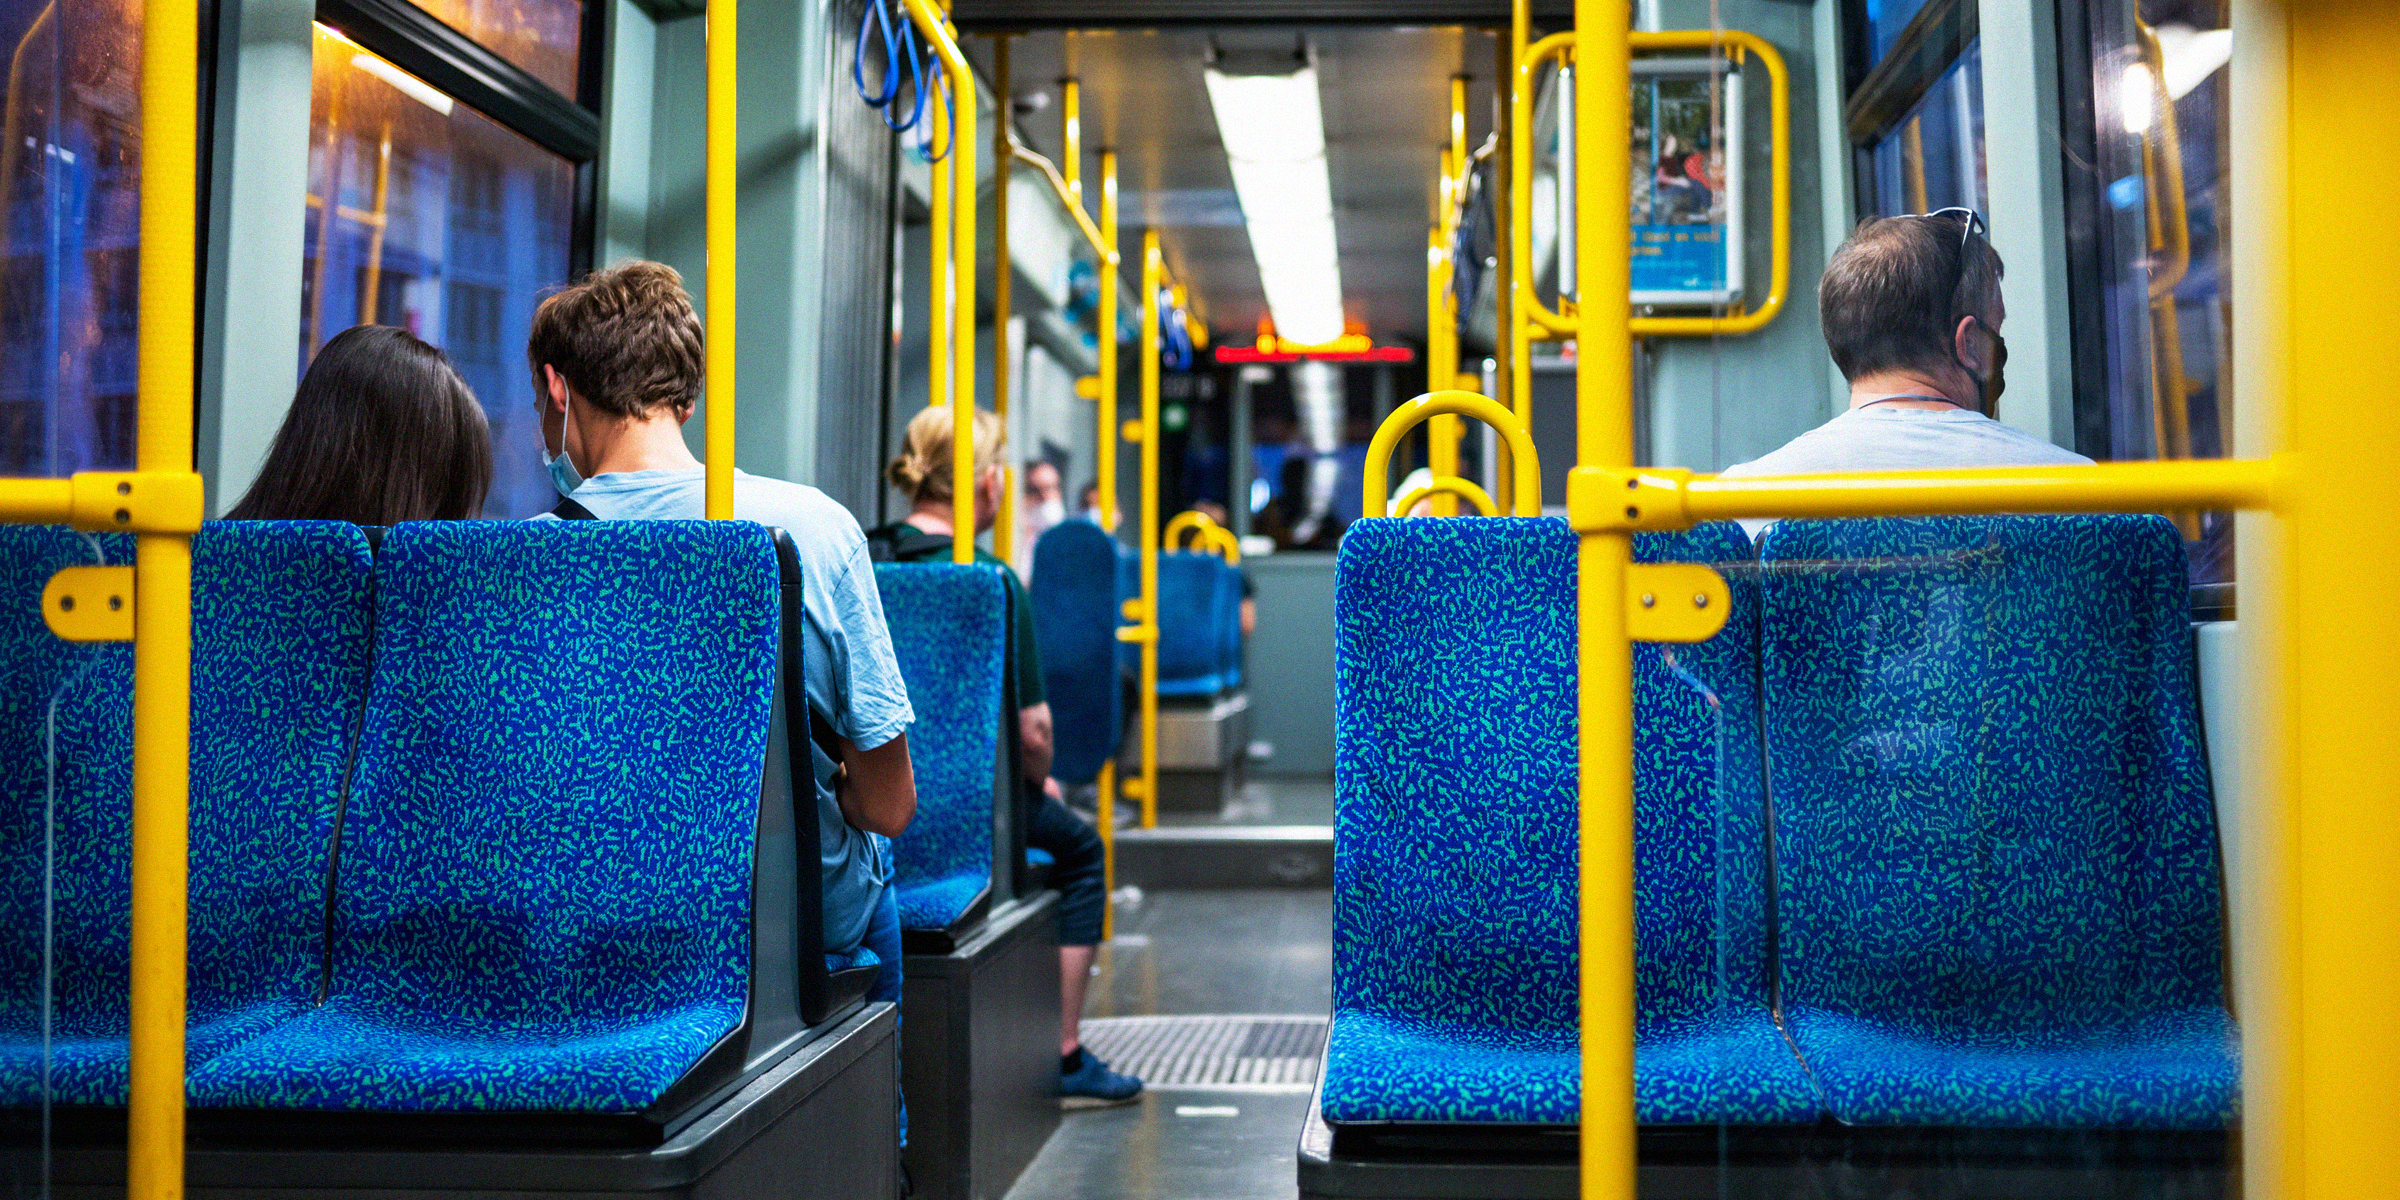 Passengers on a public bus | Source: Freepik